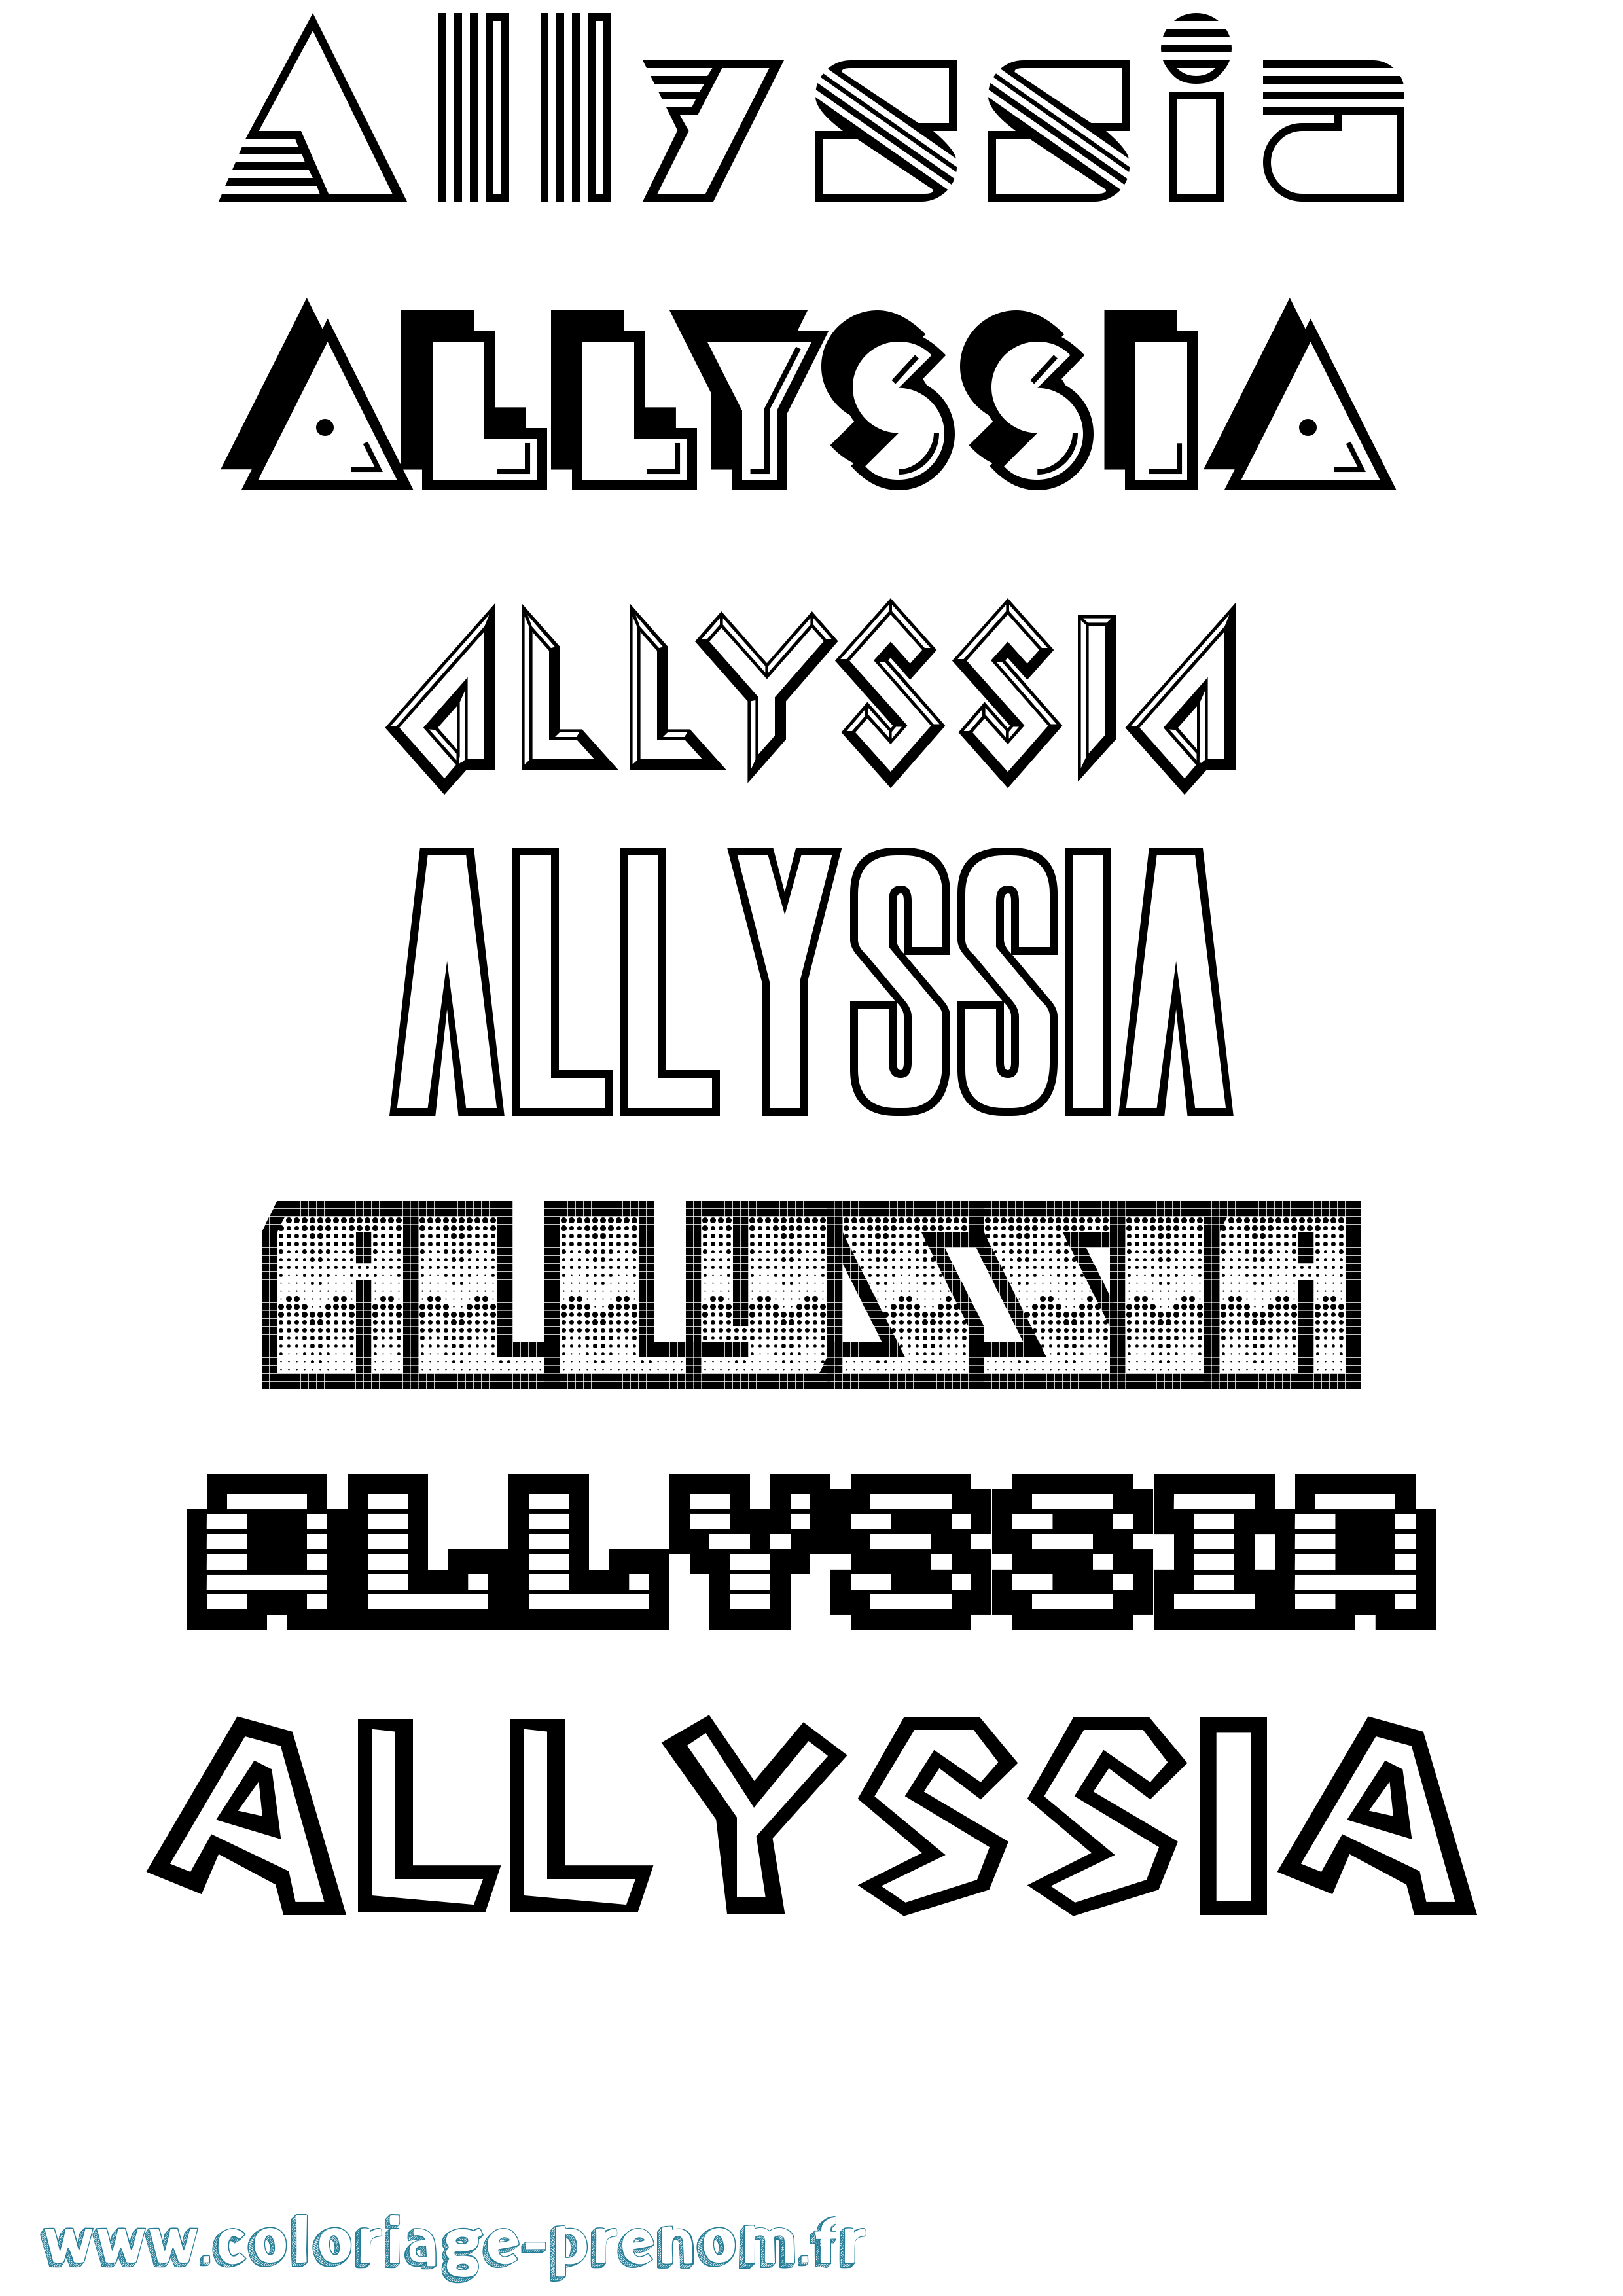 Coloriage prénom Allyssia Jeux Vidéos